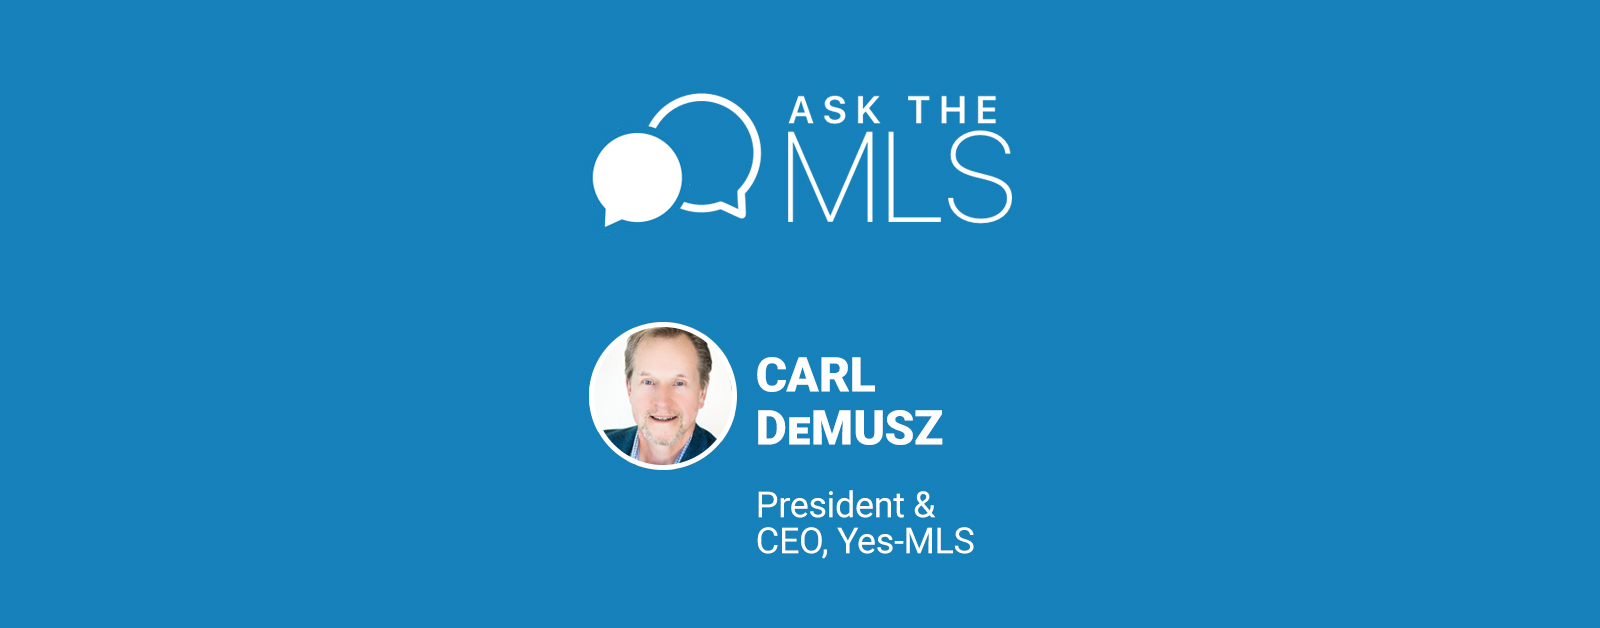 Ask the MLS: Meet Carl DeMusz of Yes-MLS